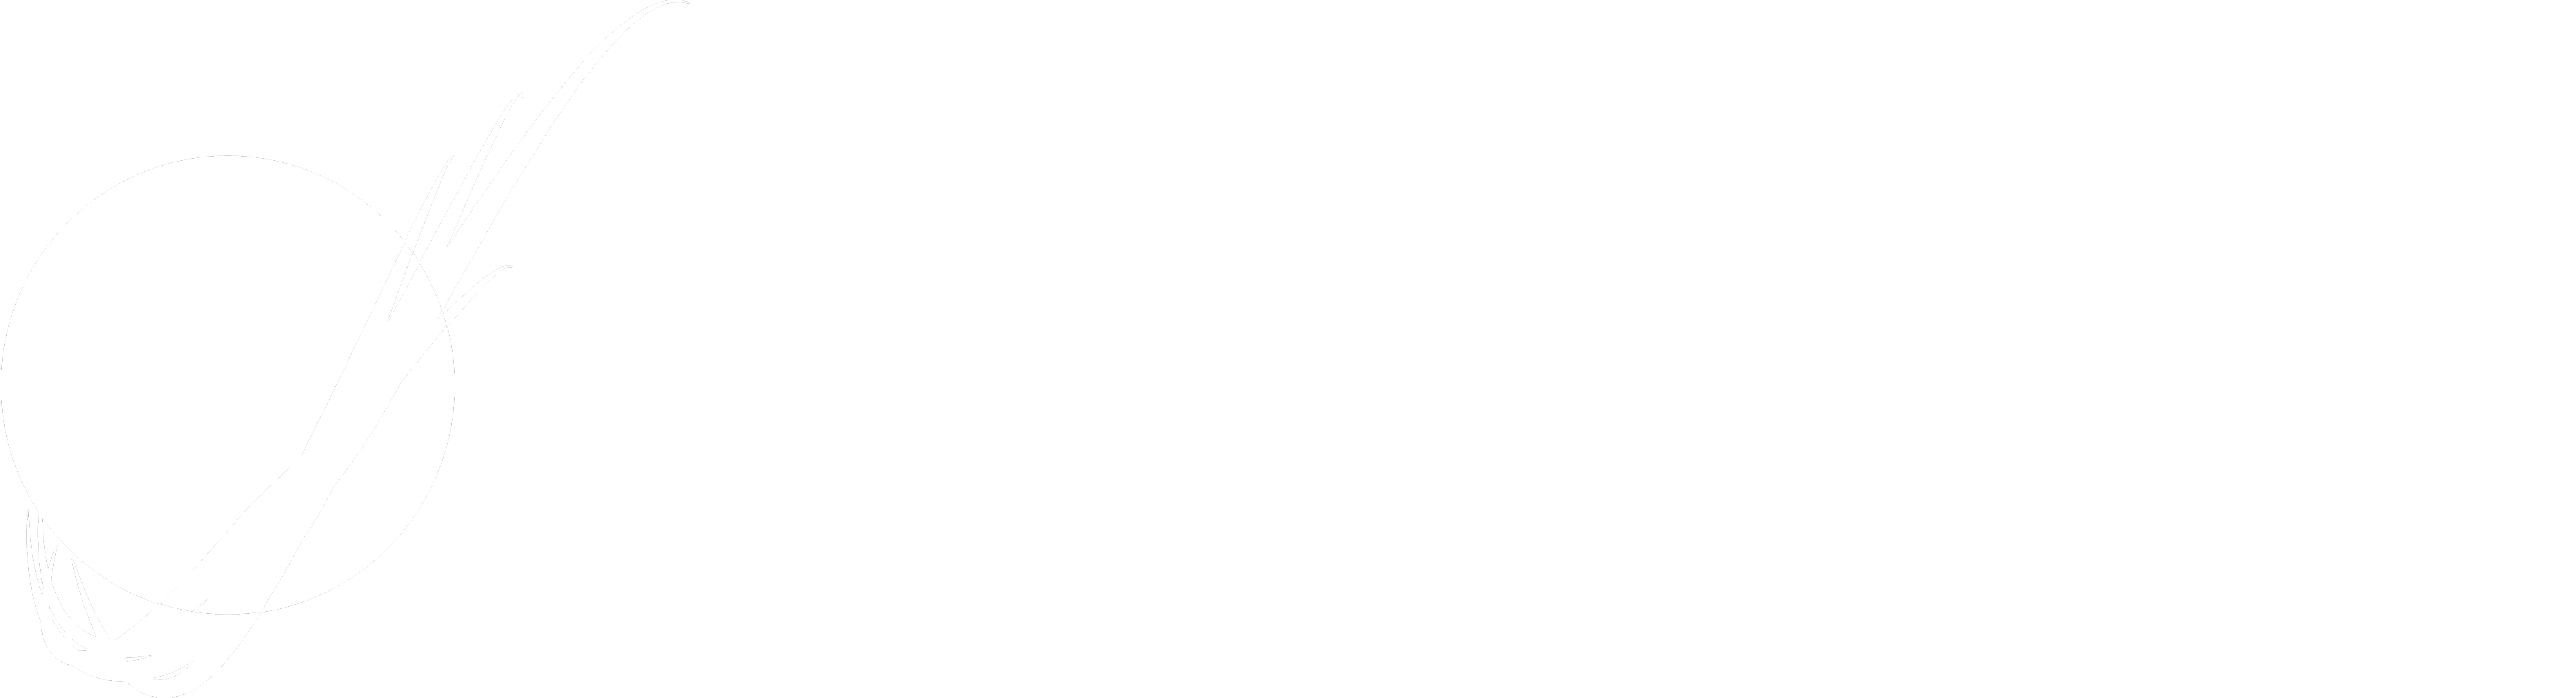 Mars Rover Design Team